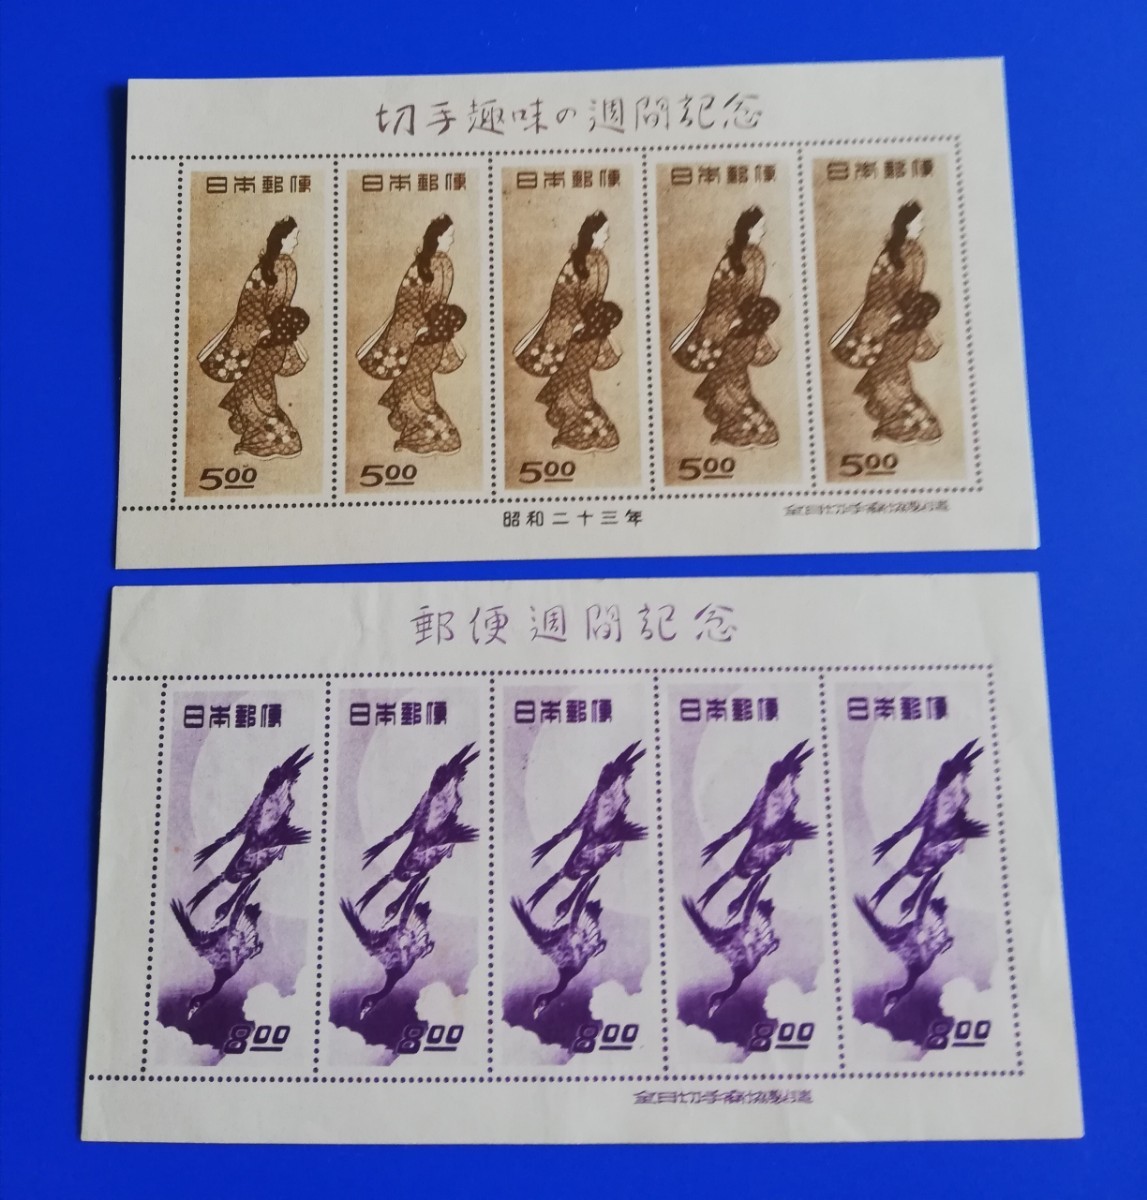 切手 『見返り美人』&『月に雁』のシートセット - 使用済切手/官製はがき